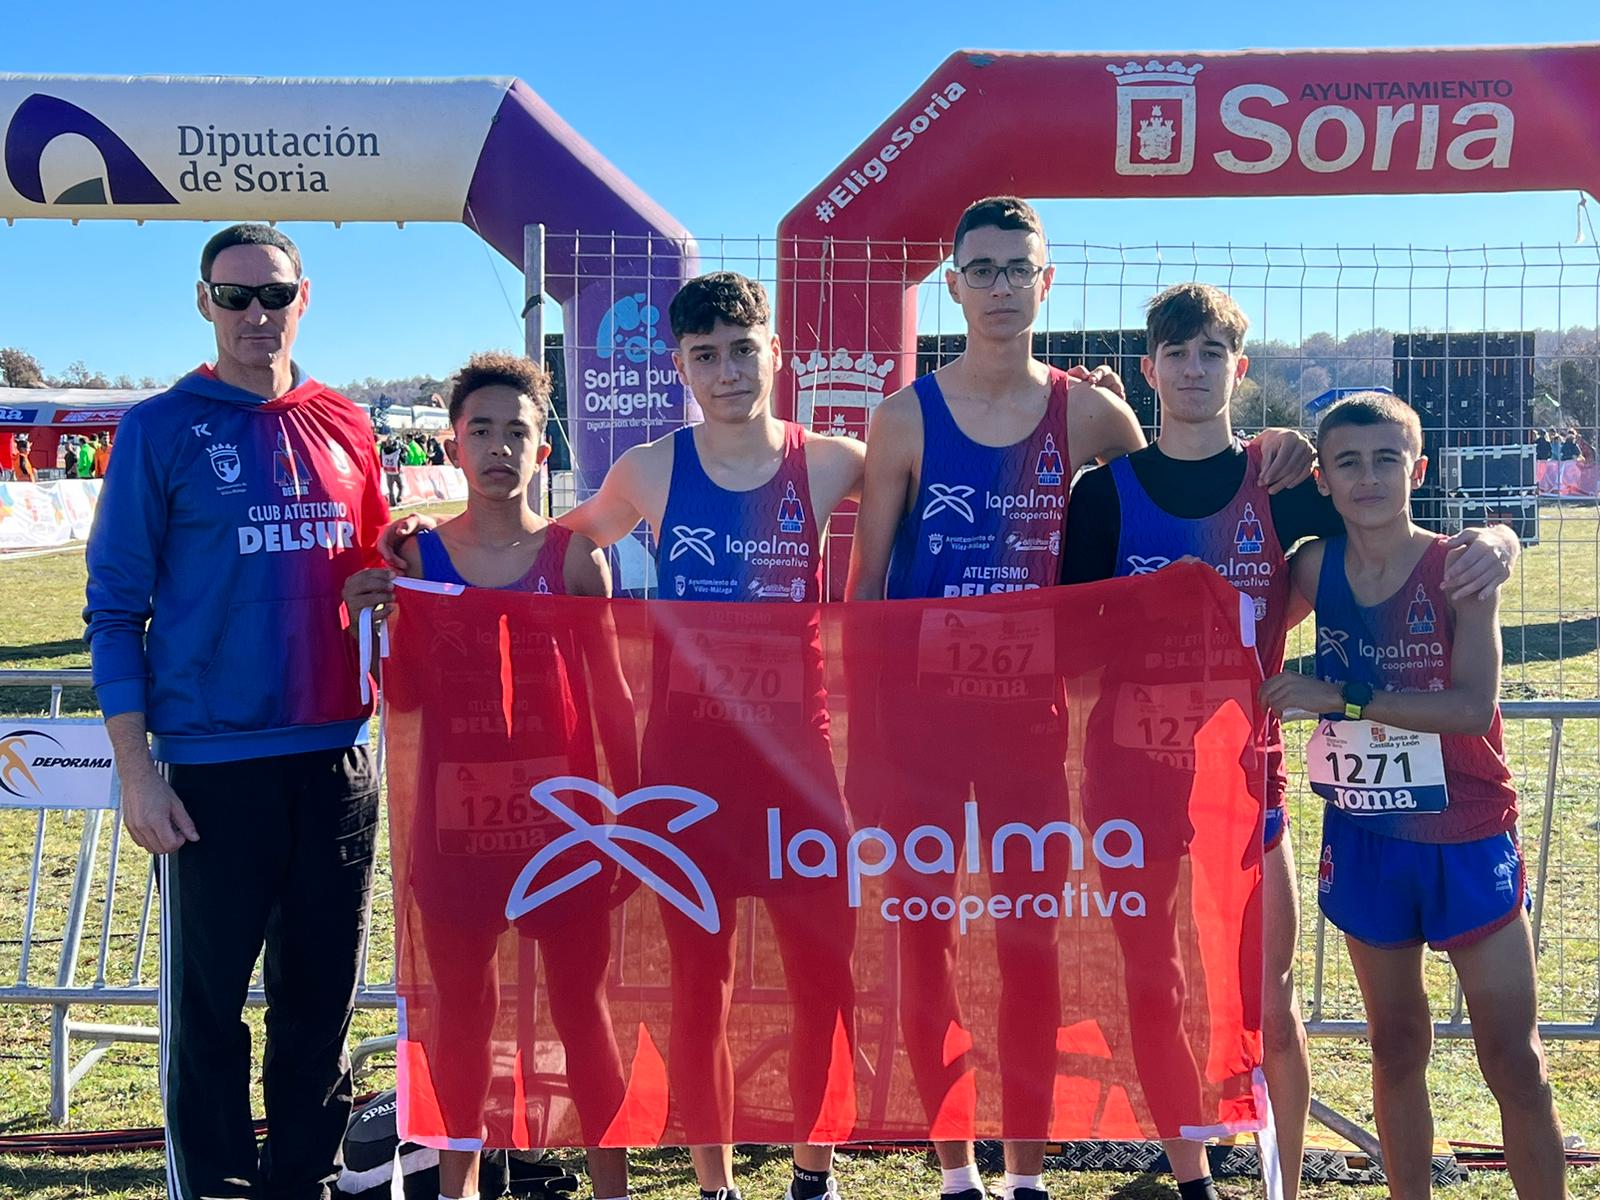 Gran participación del Atletismo Delsur – Cooperativa La Palma en el Campeonato de España de Cross por Clubes disputado en Soria